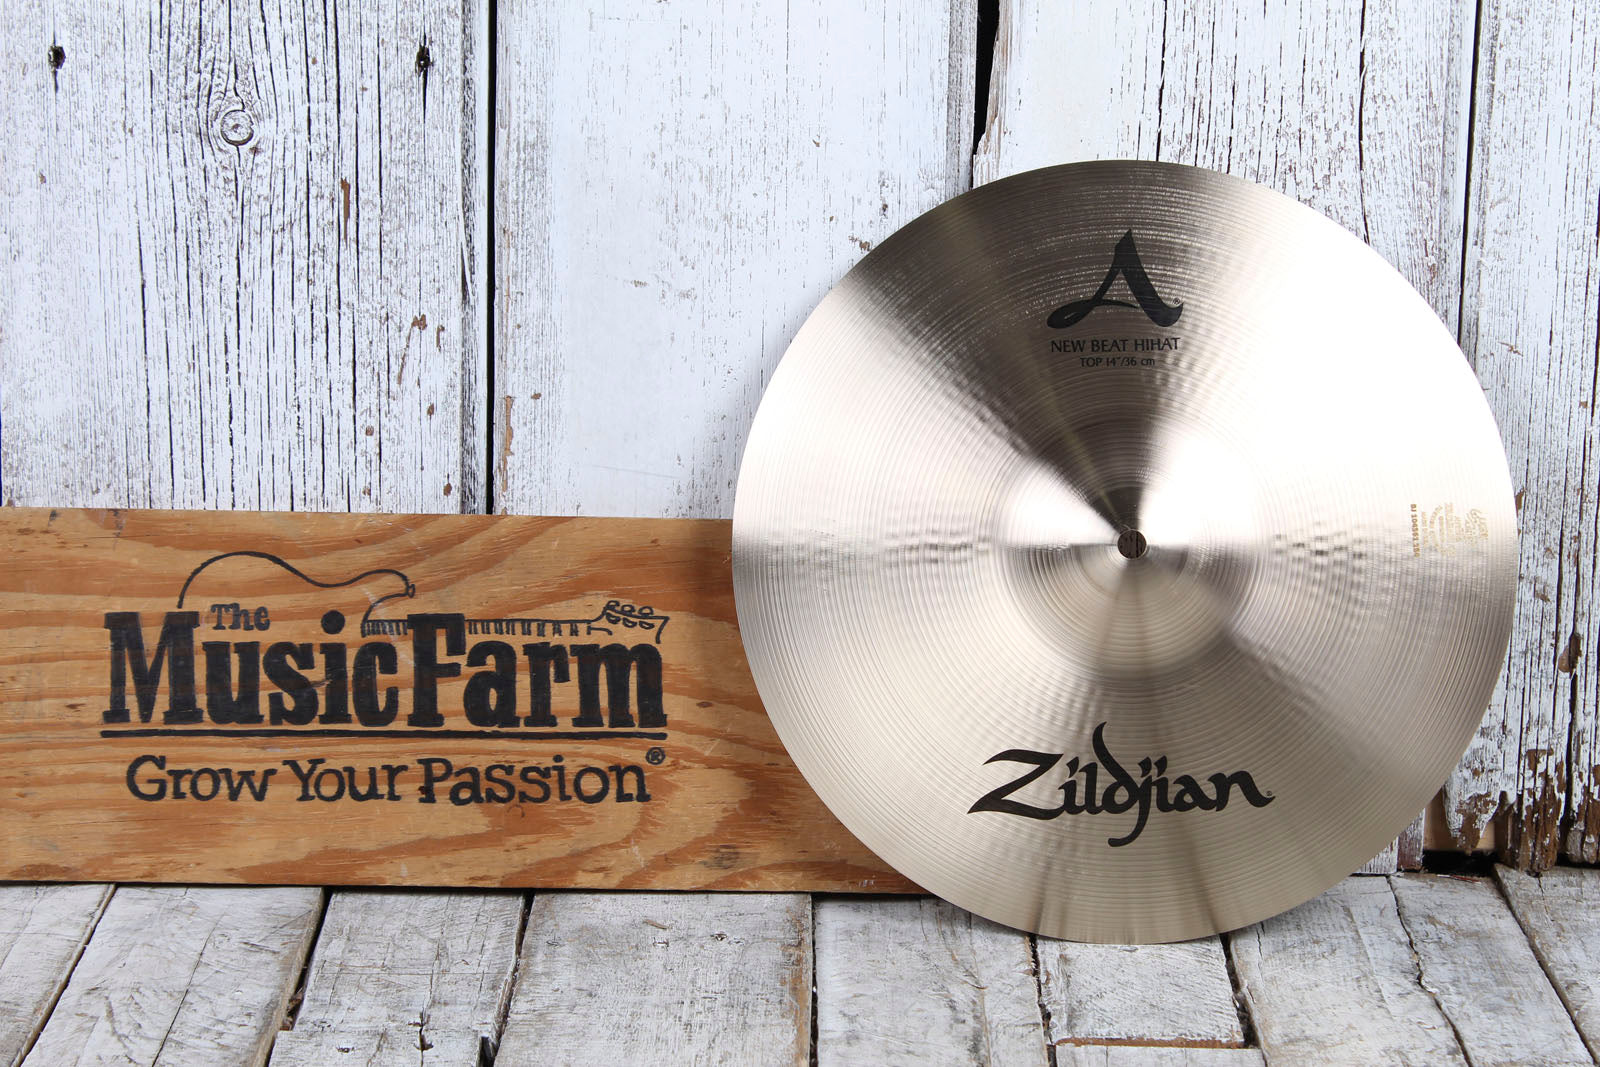 Zildjian A Zildjian New Beat HiHat 14 Inch Hi Hat Top Drum Cymbal